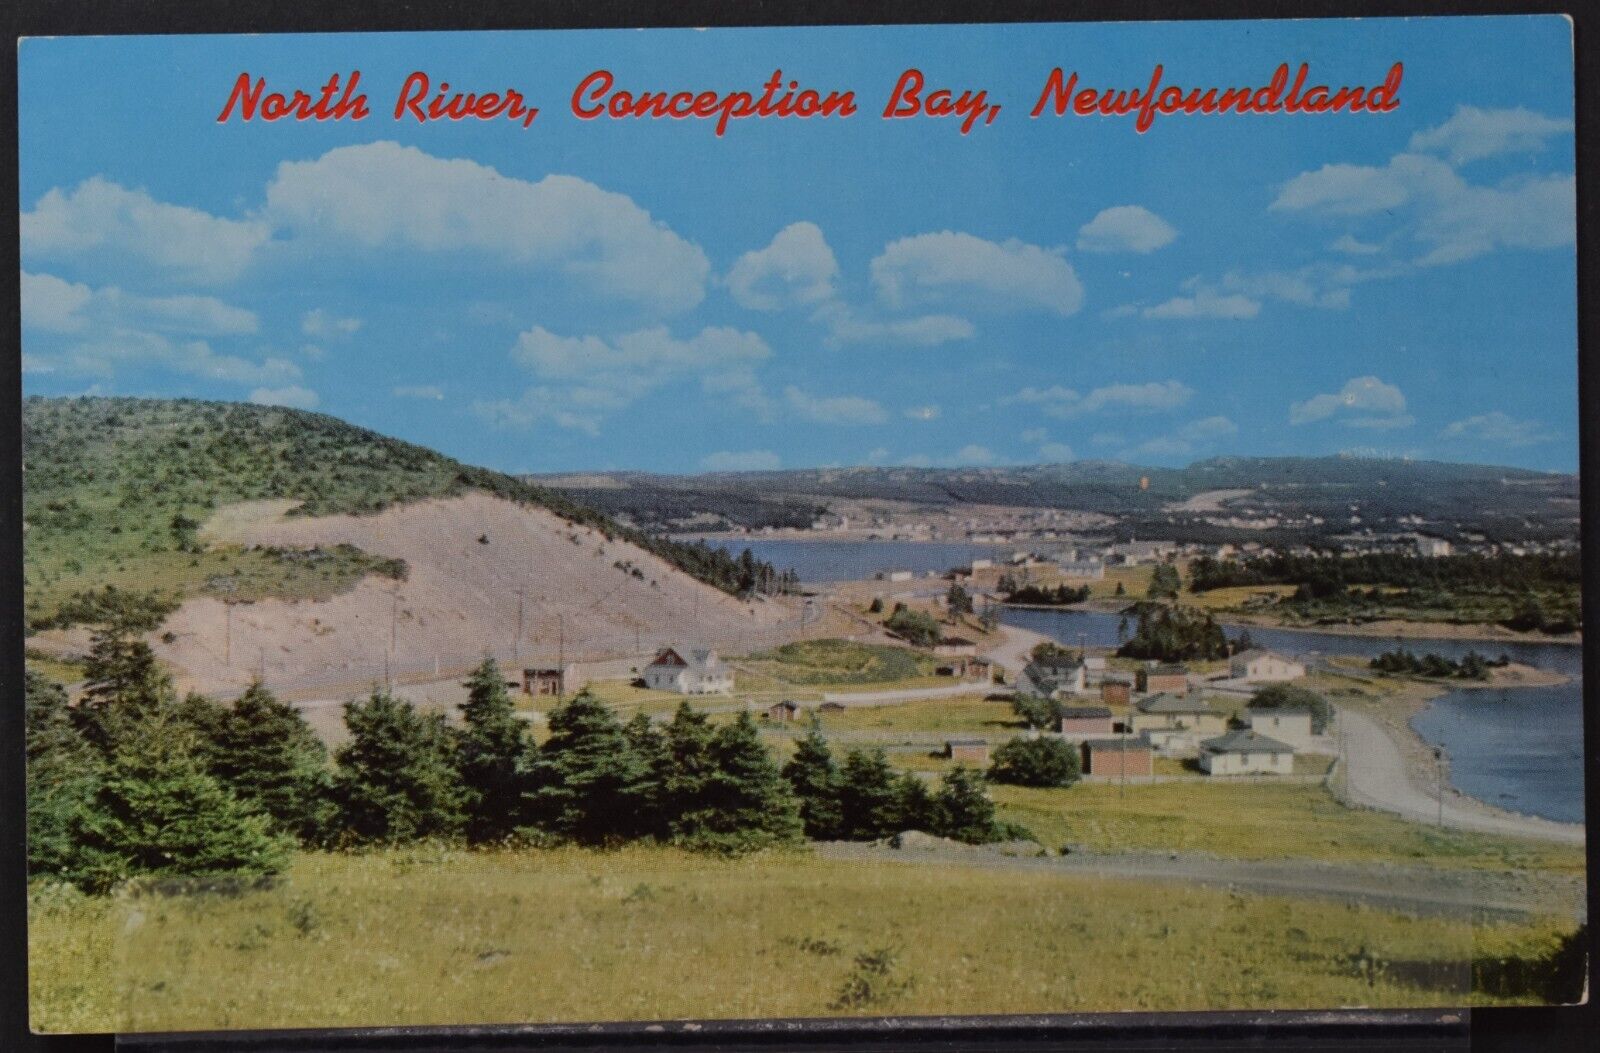 North River, Conception Bay, Newfoundland, Canada